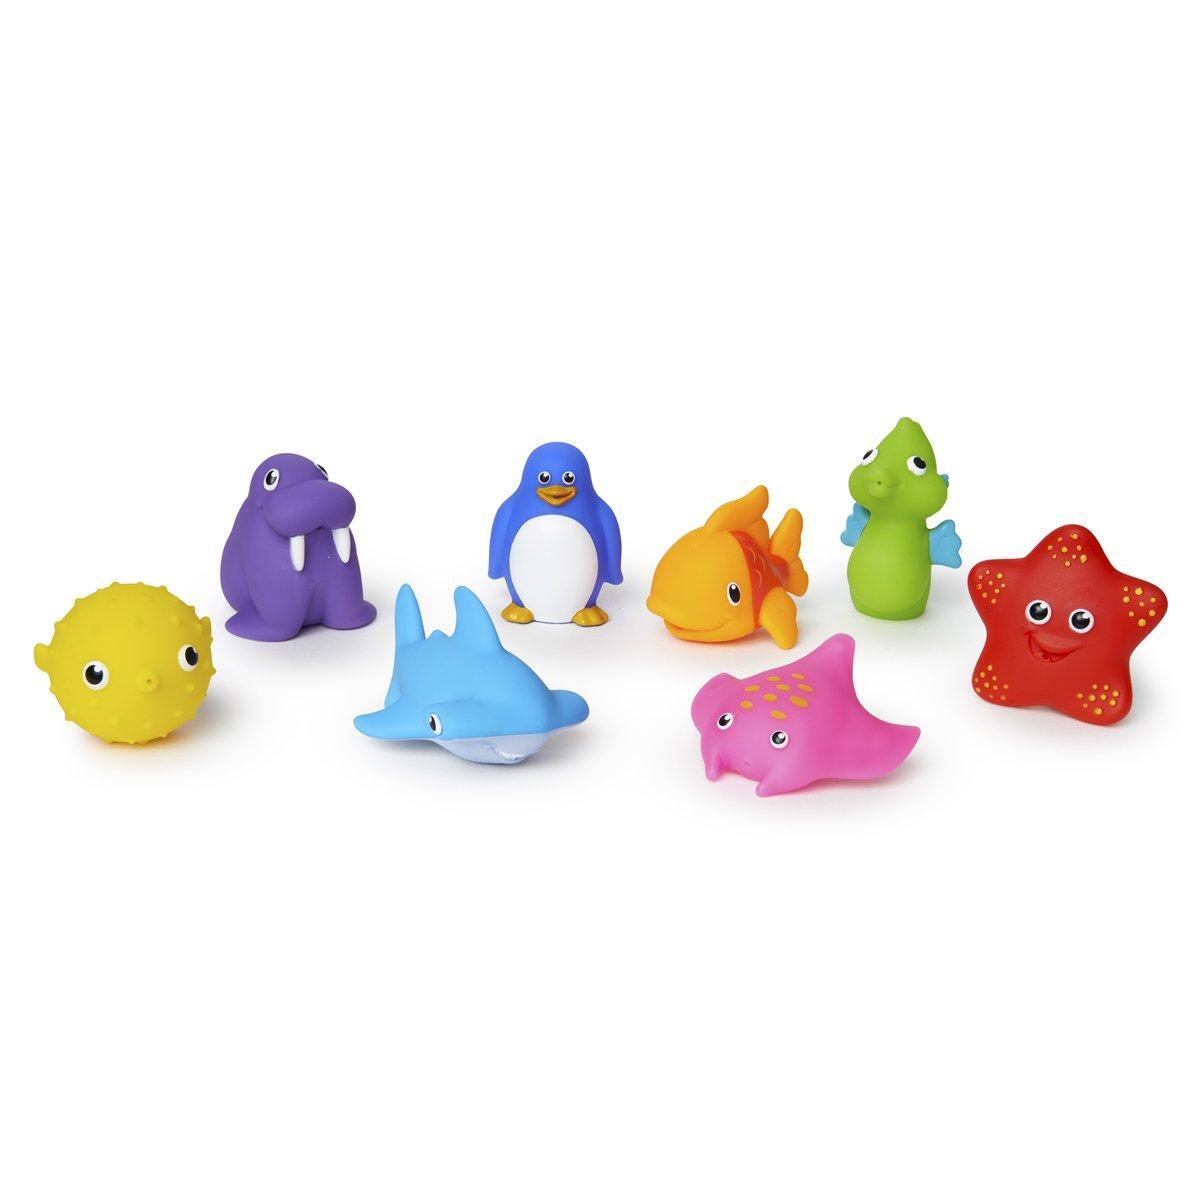 Набор игрушек для ванной. Набор для ванной Munchkin морские животные. Игрушки Ocean buddies Seahorse. Bathing Toys набор игрушек для купания животные. Резиновые игрушки для ванной.